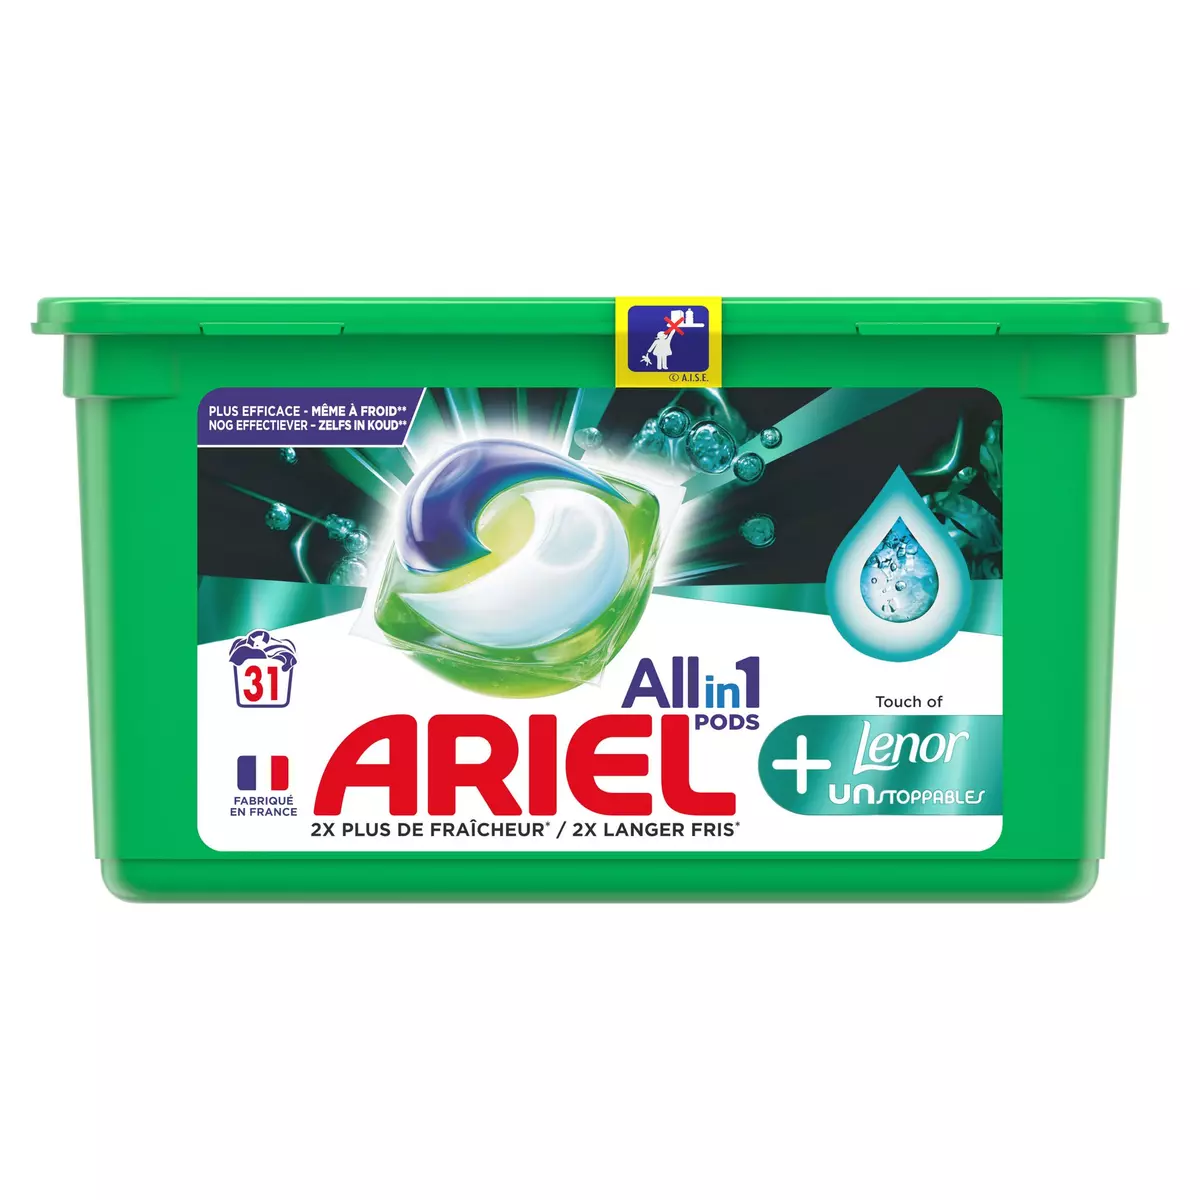 ARIEL Pods capsules de lessive tout en 1 + touche de lenor 31 capsules